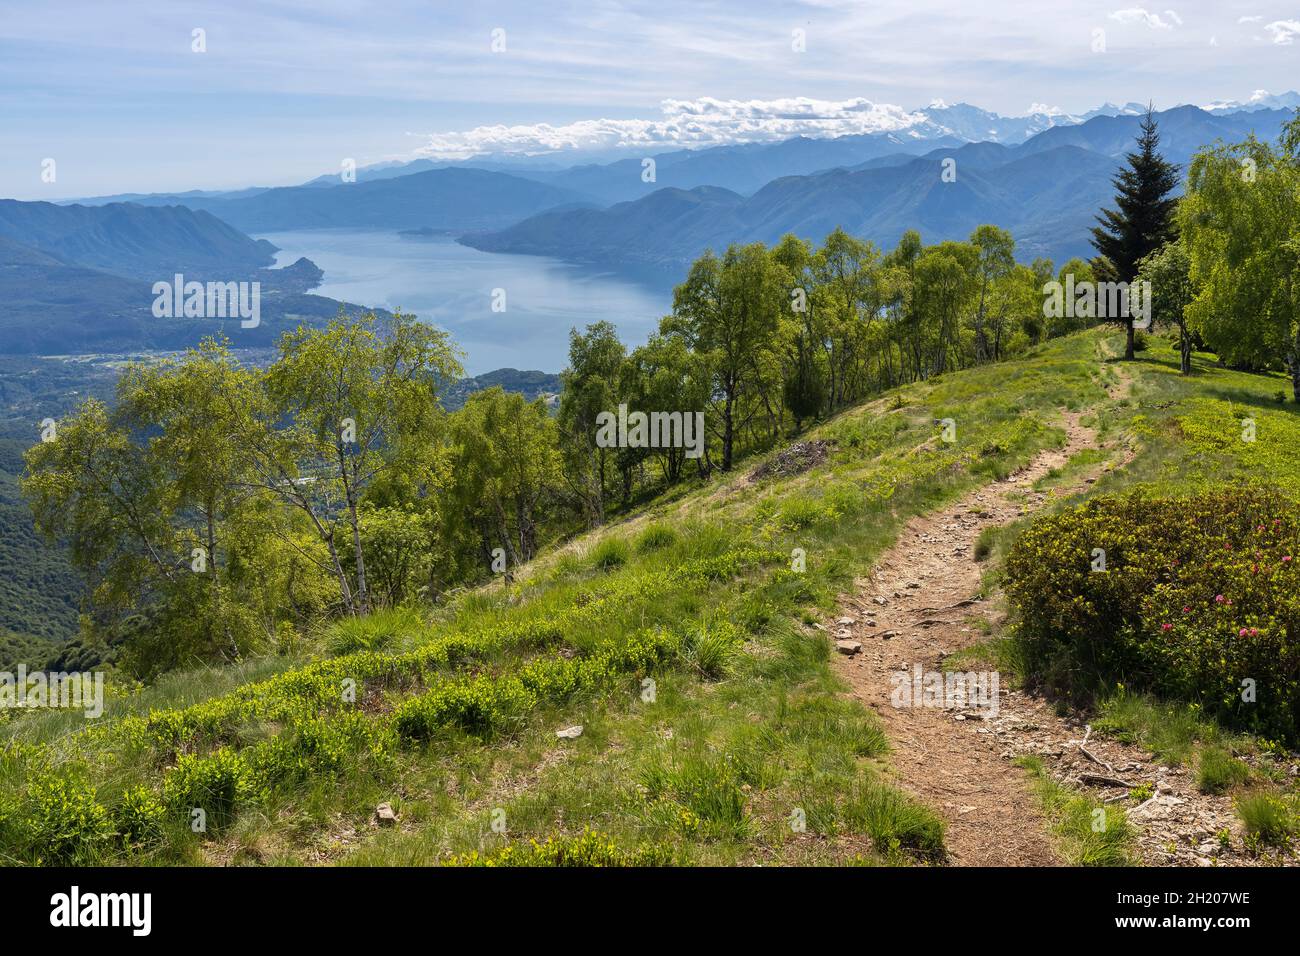 Vista sul Lago maggiore e sui monti del piemonte dalla cima del Monte Lema. Dumenza, distretto di Varese, Lombardia, Italia. Foto Stock